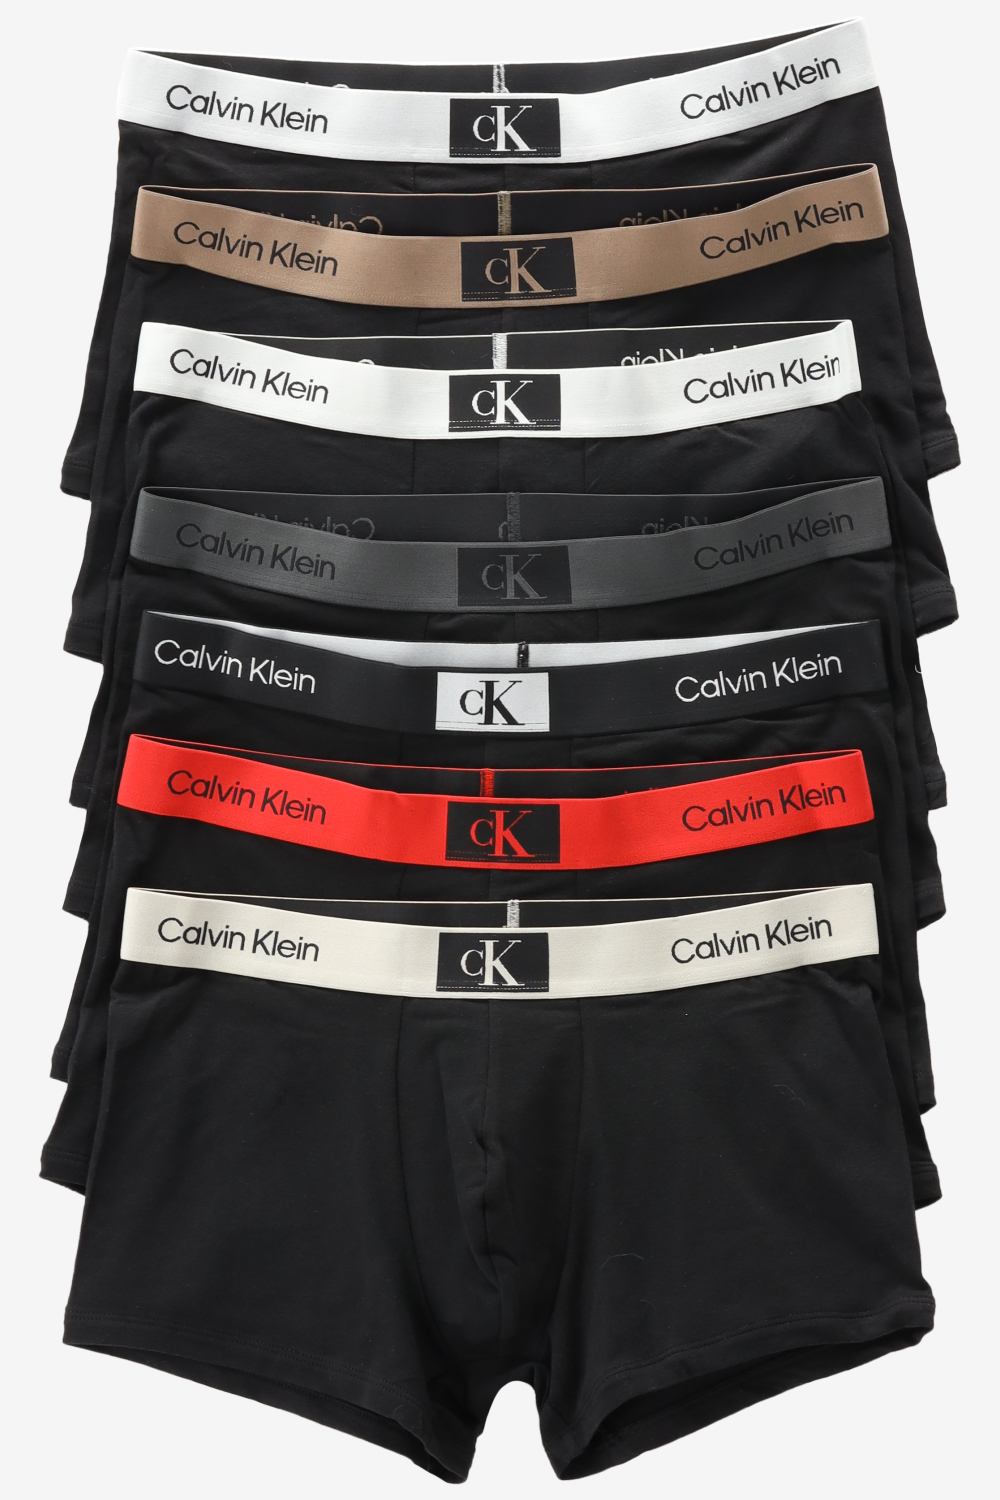 Calvin Klein heren boxers normale lengte (7-pack) - zwart met gekleurde tailleband - Maat: S